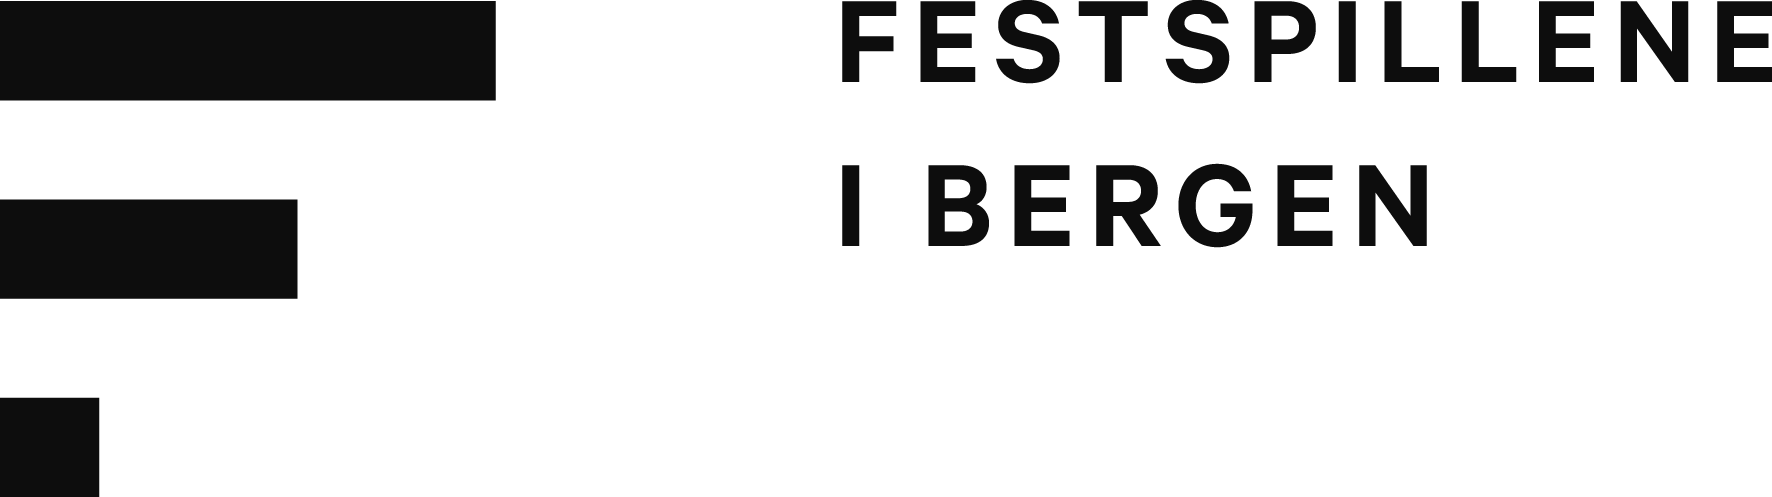 Festspillene i Bergen logo